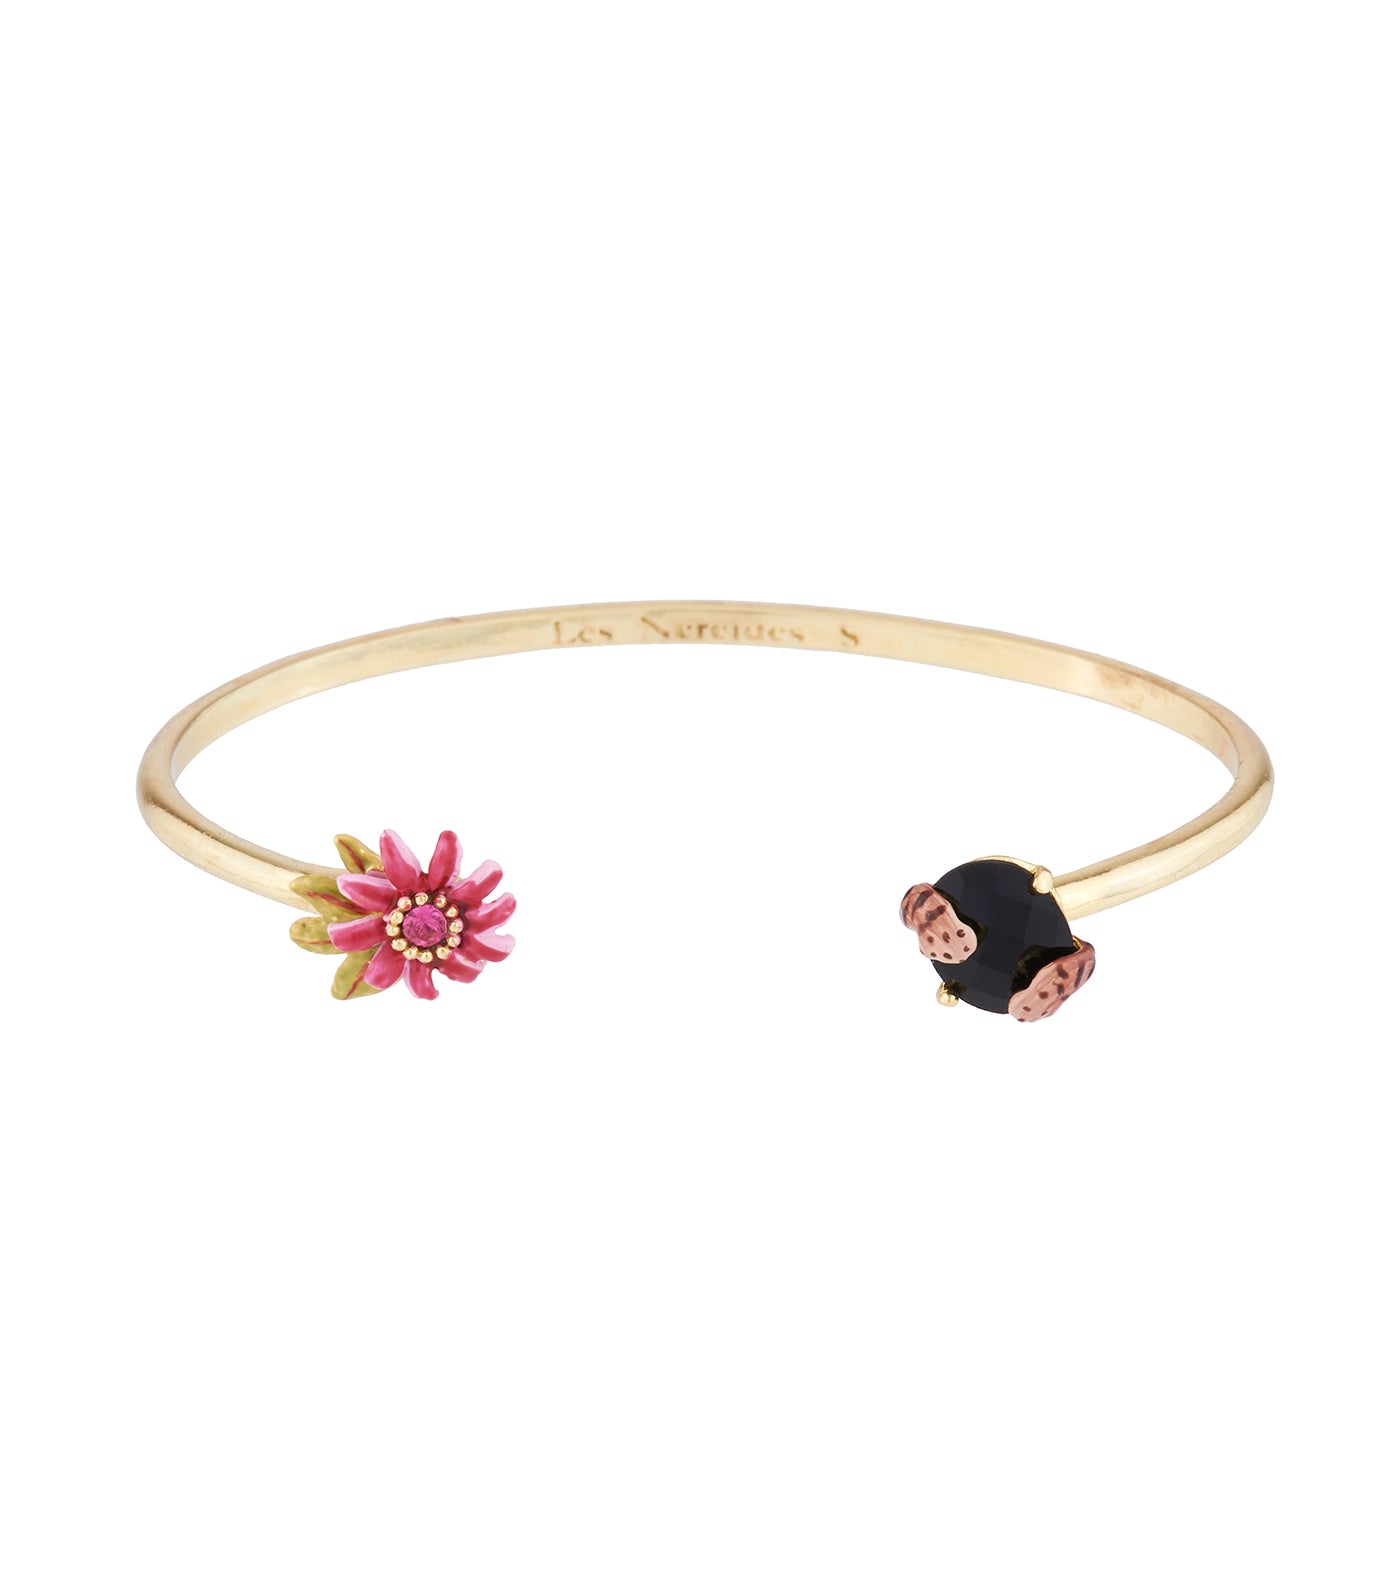 les néréides exotic flowers, corals and natural stone bangle bracelet